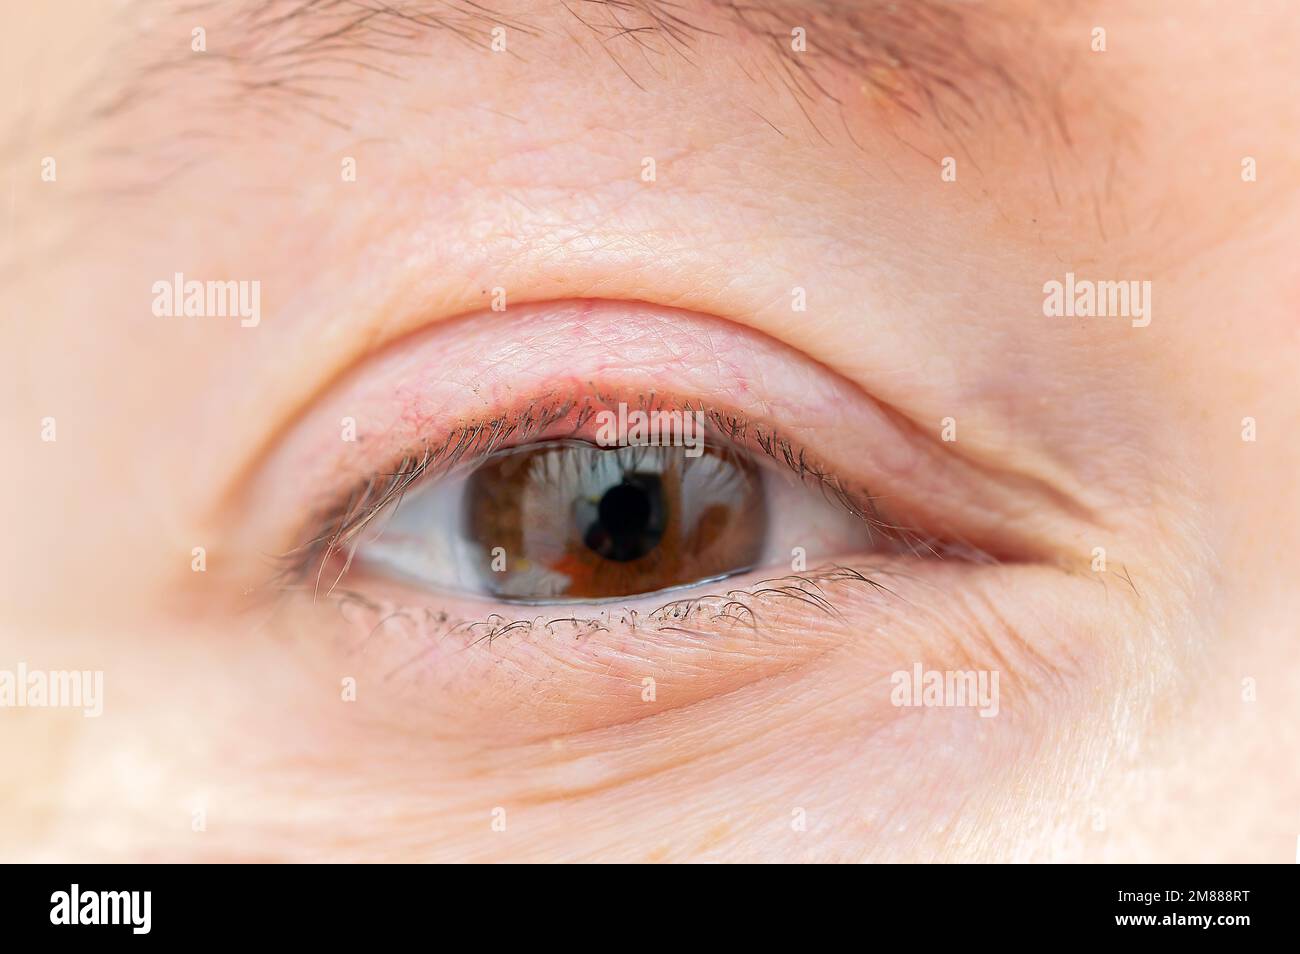 Cerca del ojo de una mujer con una infección bacteriana de una glándula sebácea en el párpado inferior. Foto de stock